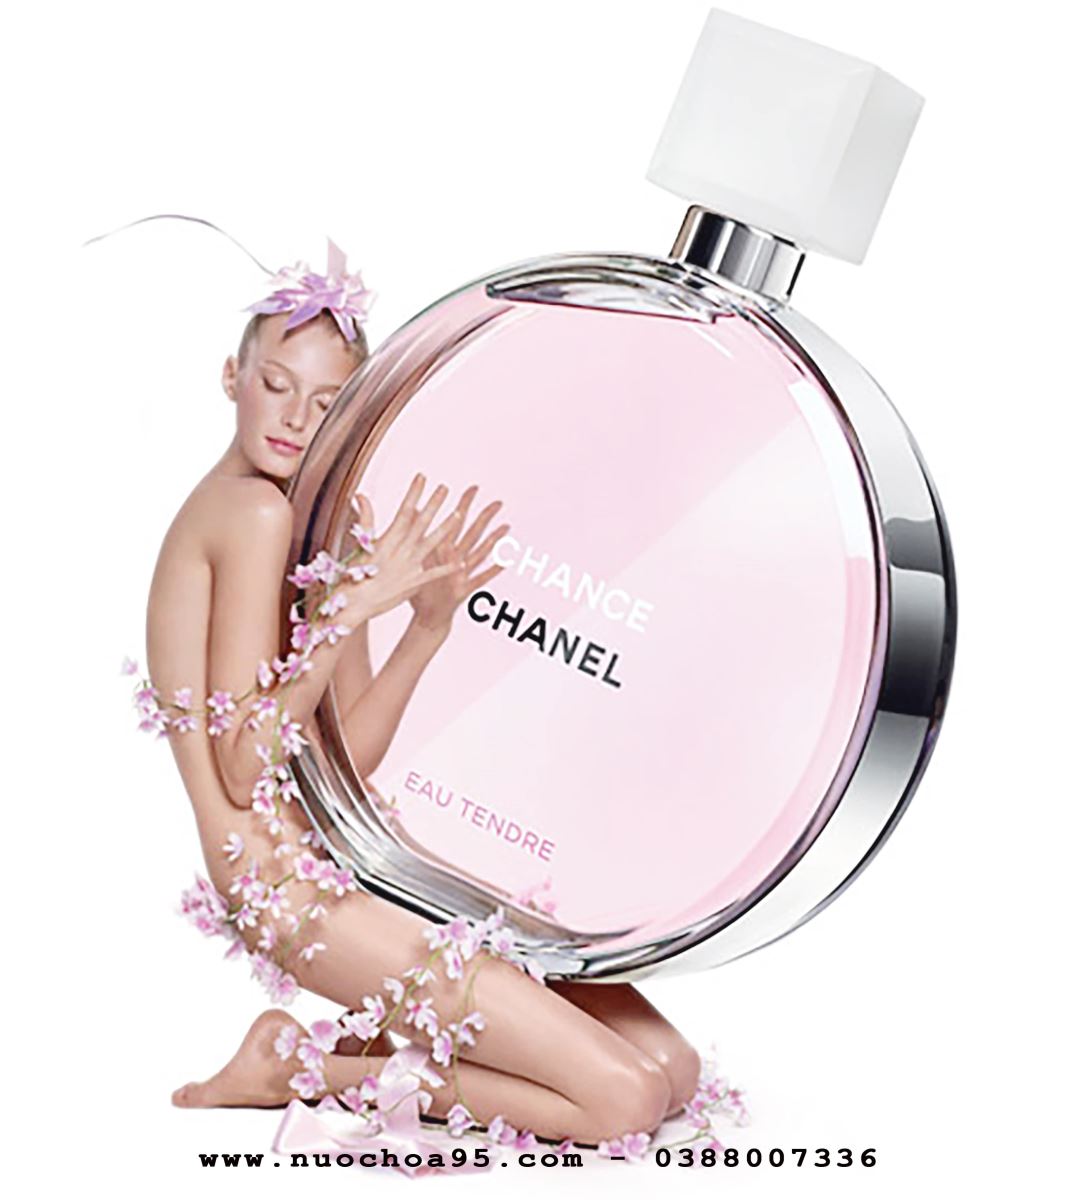 Nước hoa nữ Chance Eau Tendre của hãng CHANEL